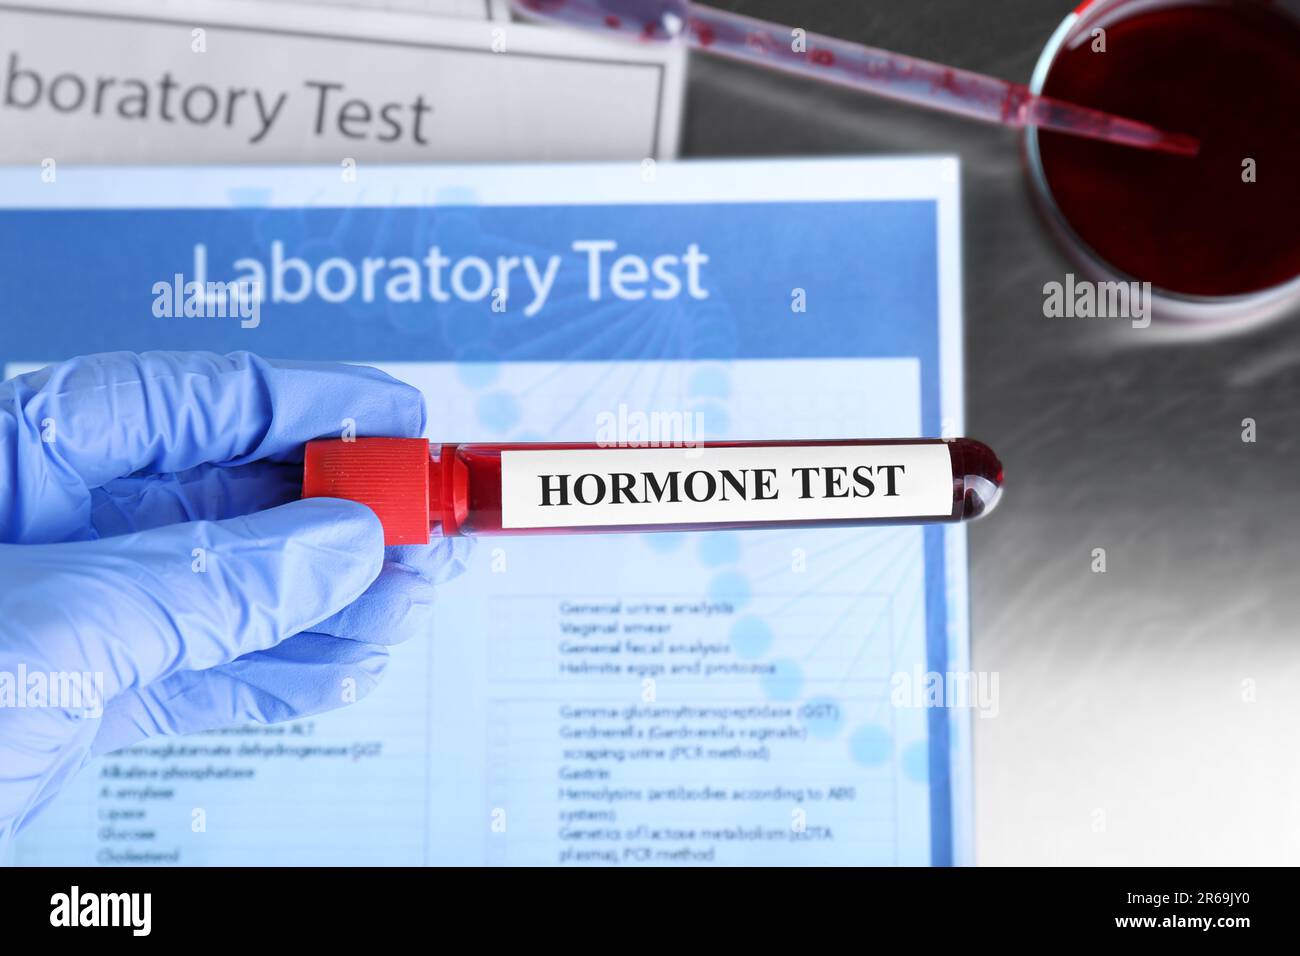 Arzt hält Glasröhrchen mit Blutprobe und Etikett Hormone Test am Tisch, Draufsicht Stockfoto